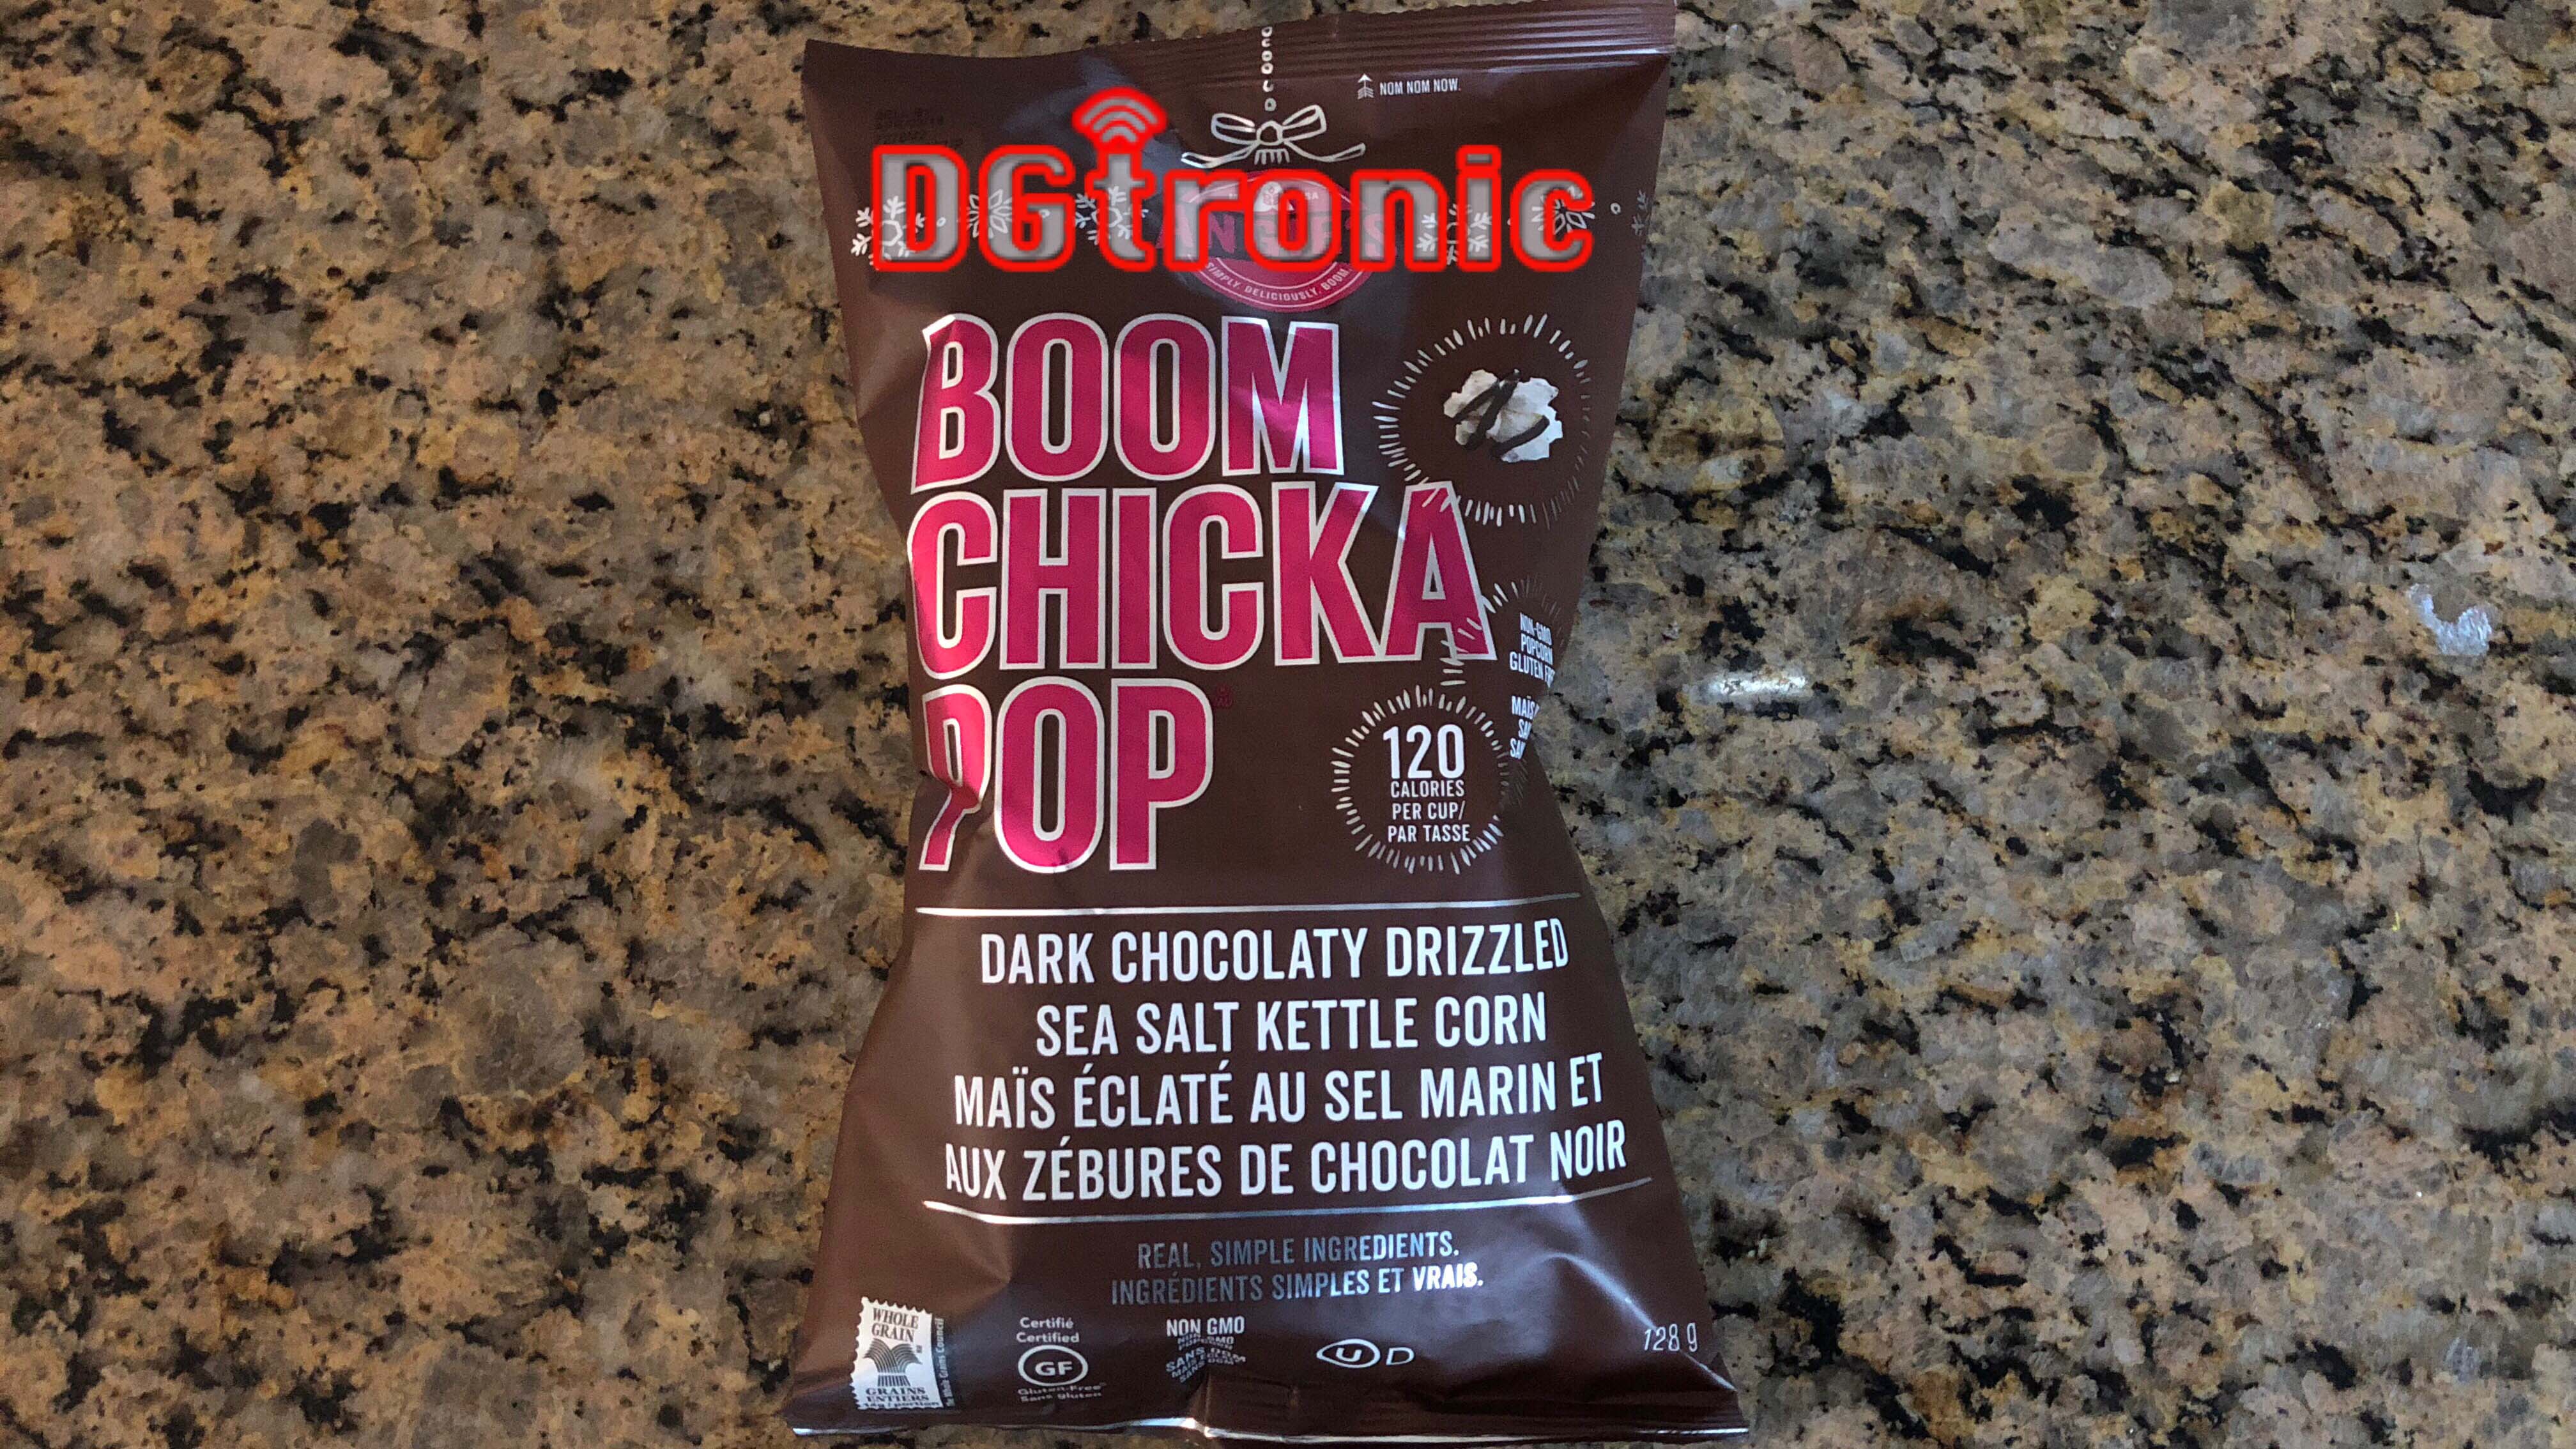 snack - ene D Gironie Boom Chicka. 20P 120 Dark Chocolaty Drizzlel Sea Salt Kettle Corn Mas Clat Au Sel Marinet Aux Zbures De Chocolat Noir Real Gimple Ingredients Fonts Simples Et Vrais